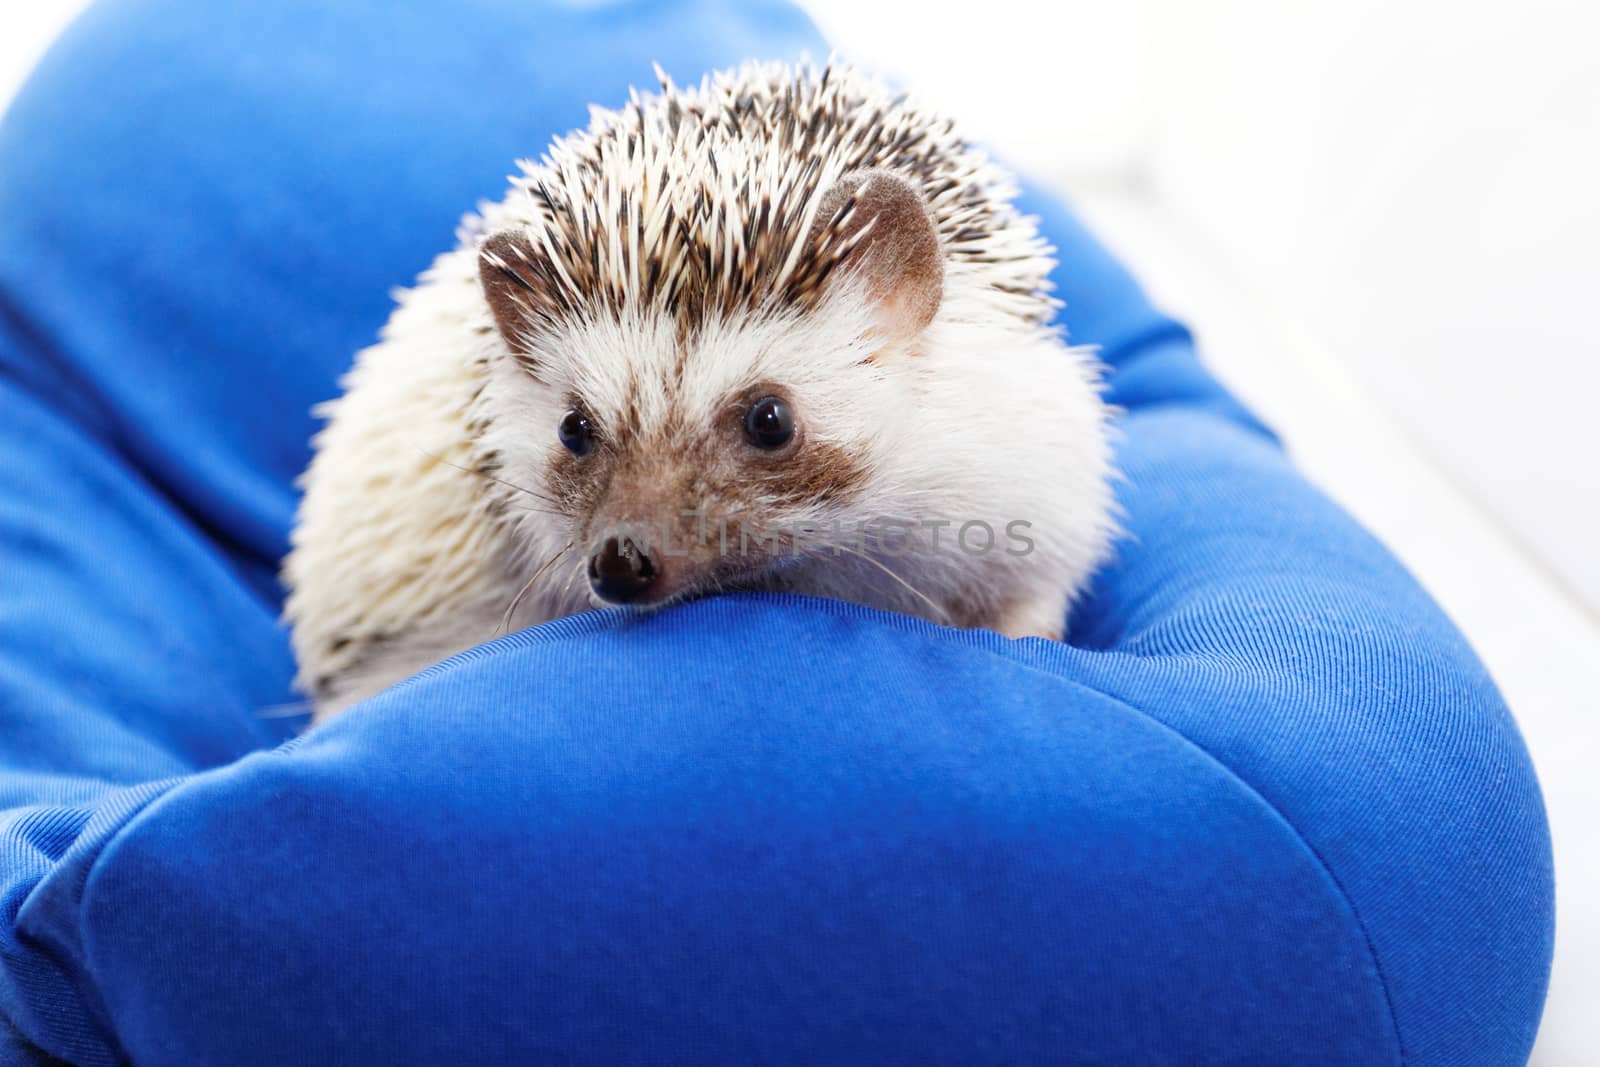 Cute hedgehog by Nneirda